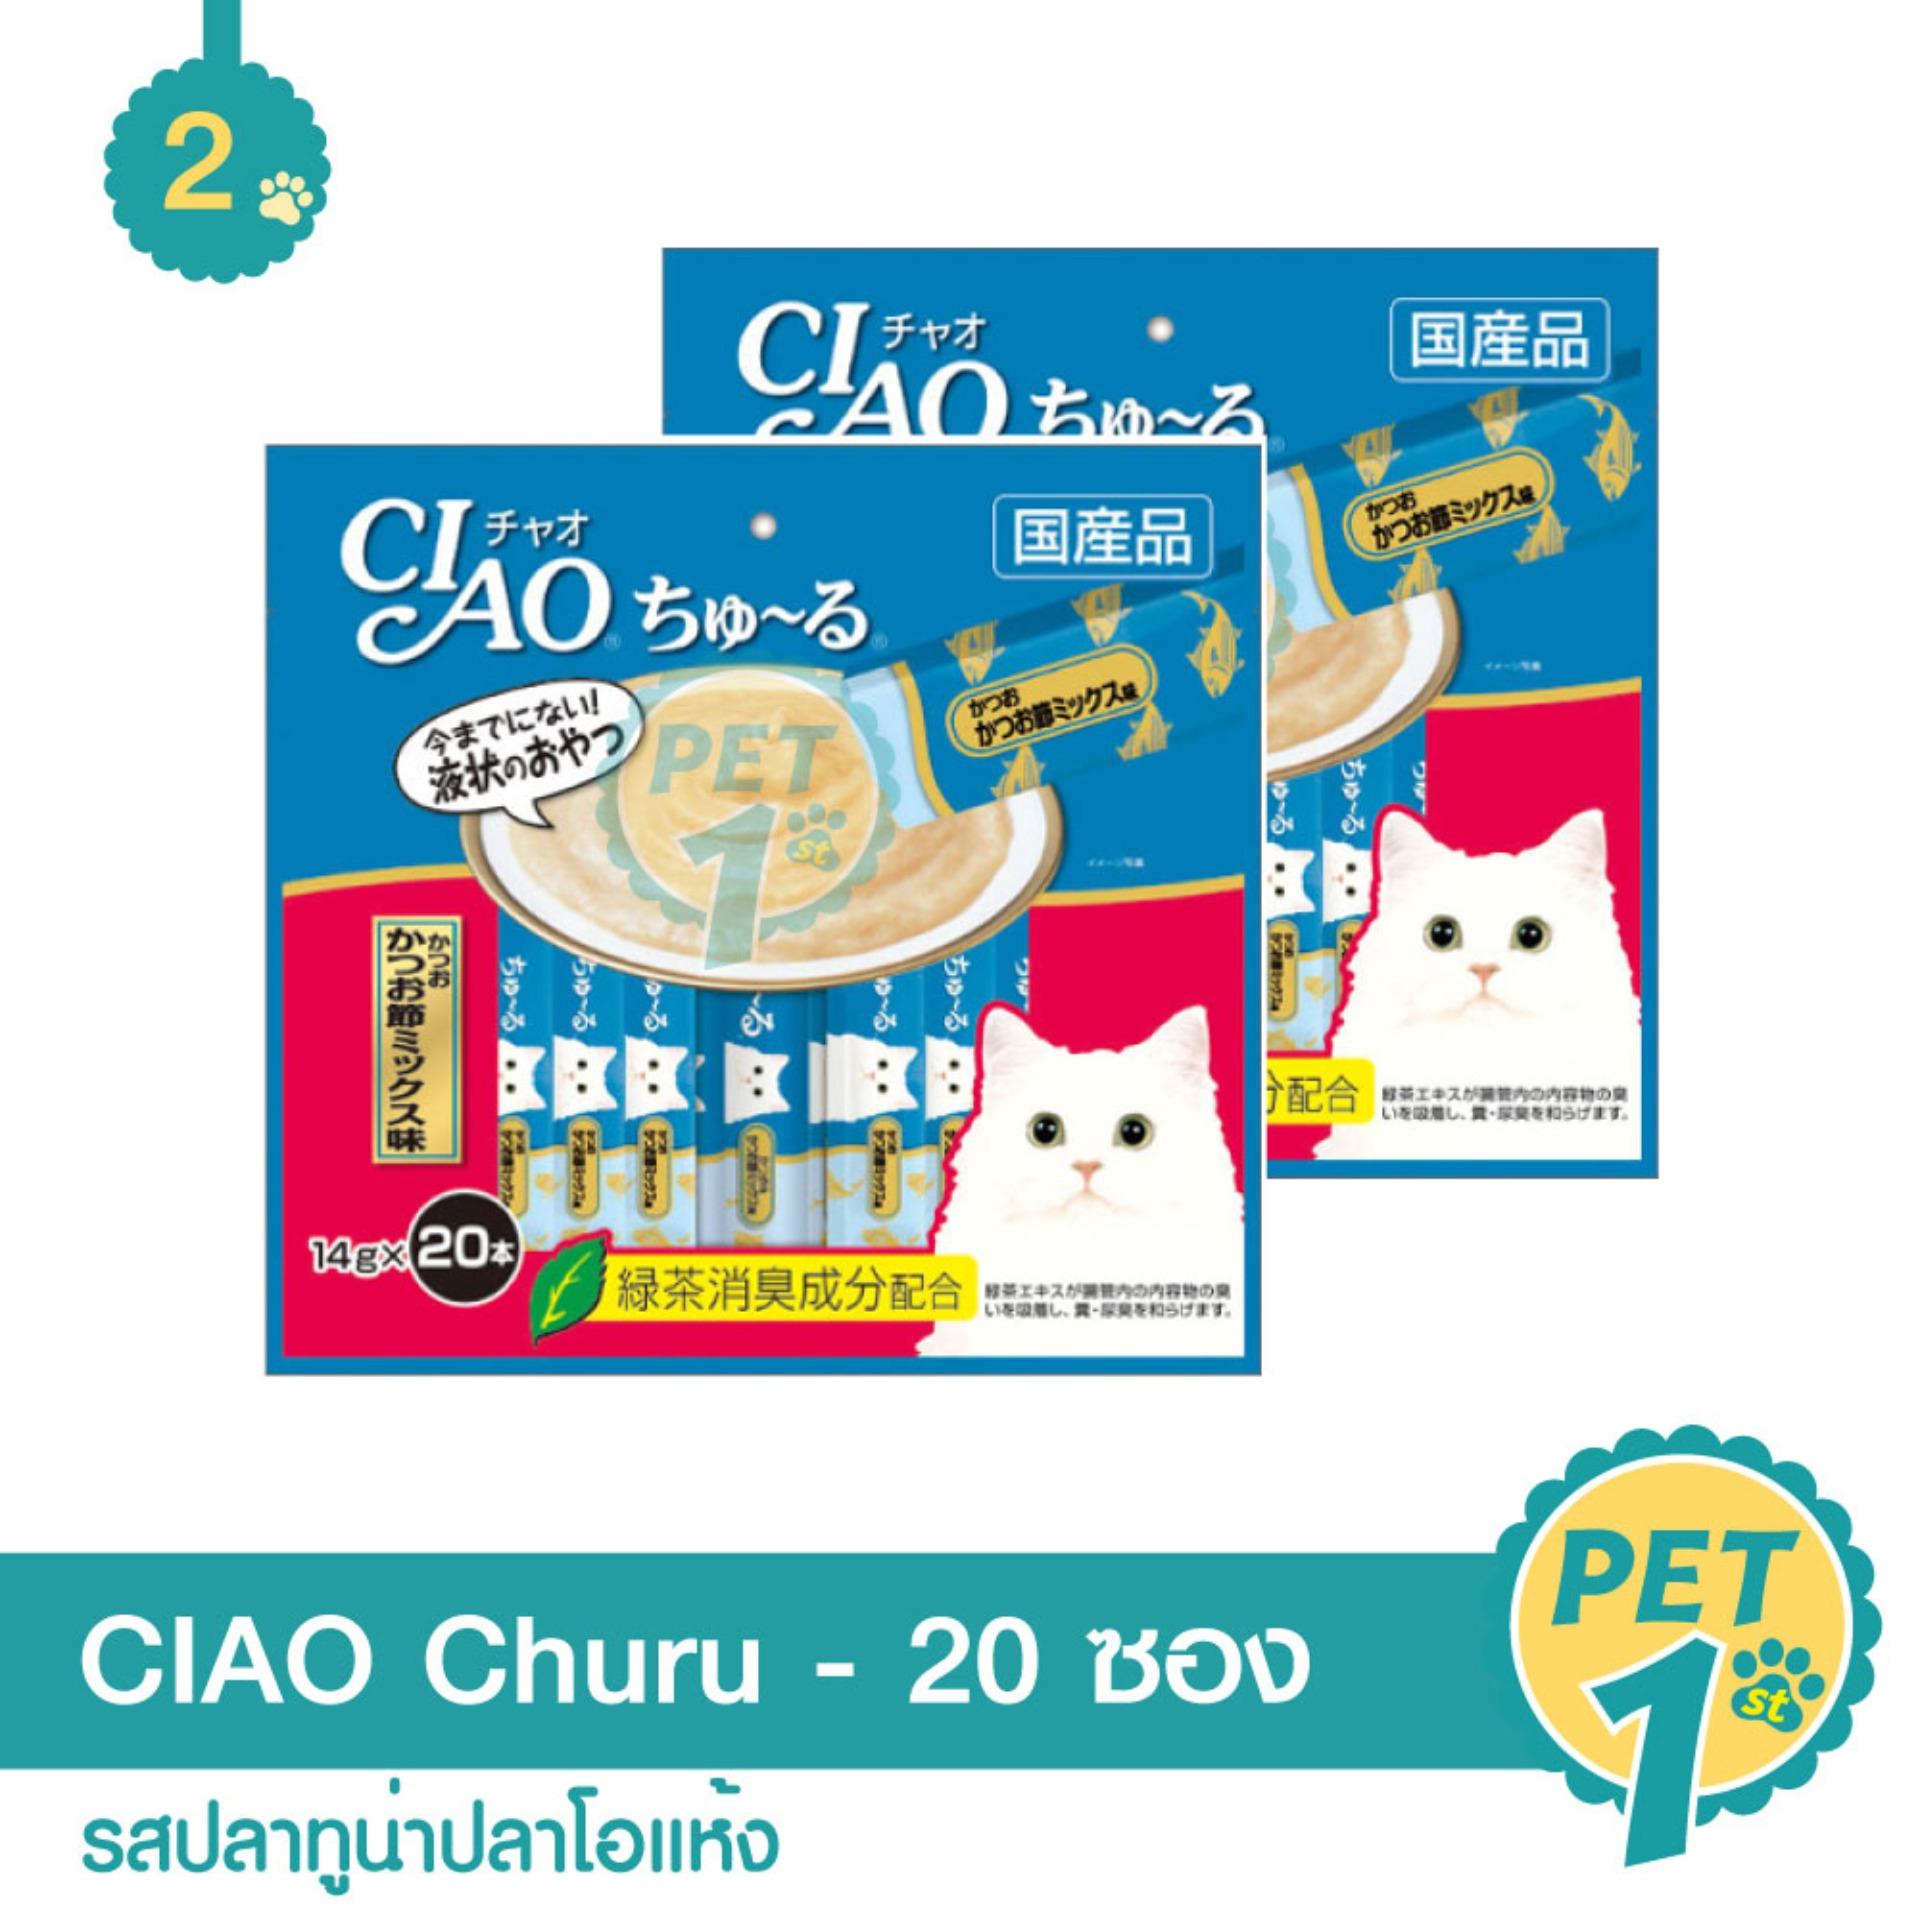 CIAO Churu ขนมแมวเลีย ชูหรู ปลาทูน่าปลาโอแห้ง จำนวน 20 ซอง - 2 ซอง